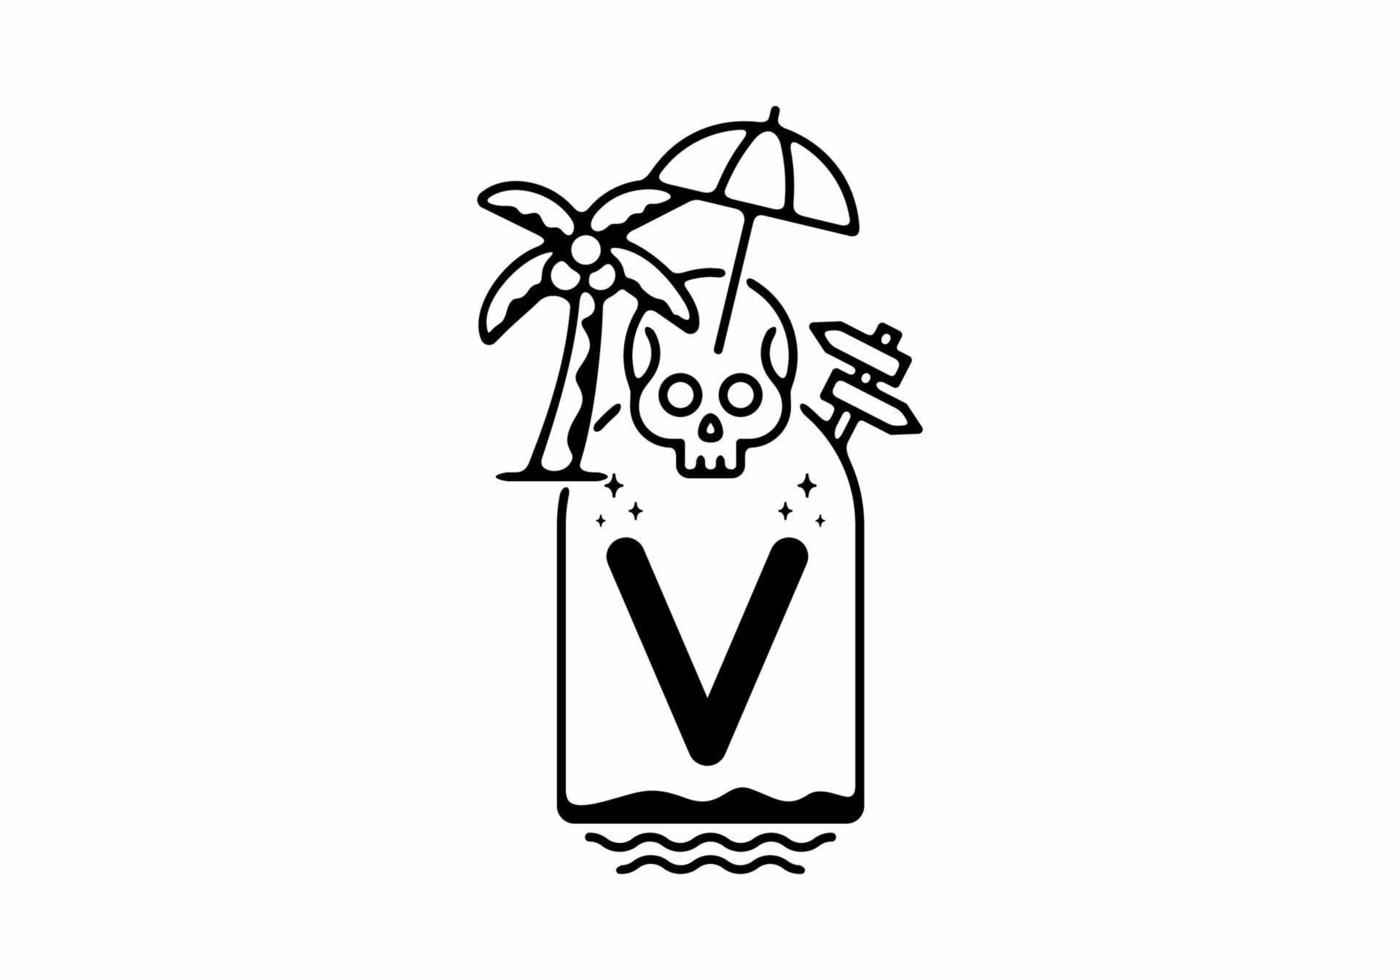 Black line art illustration of skull beach with V initial letter vector